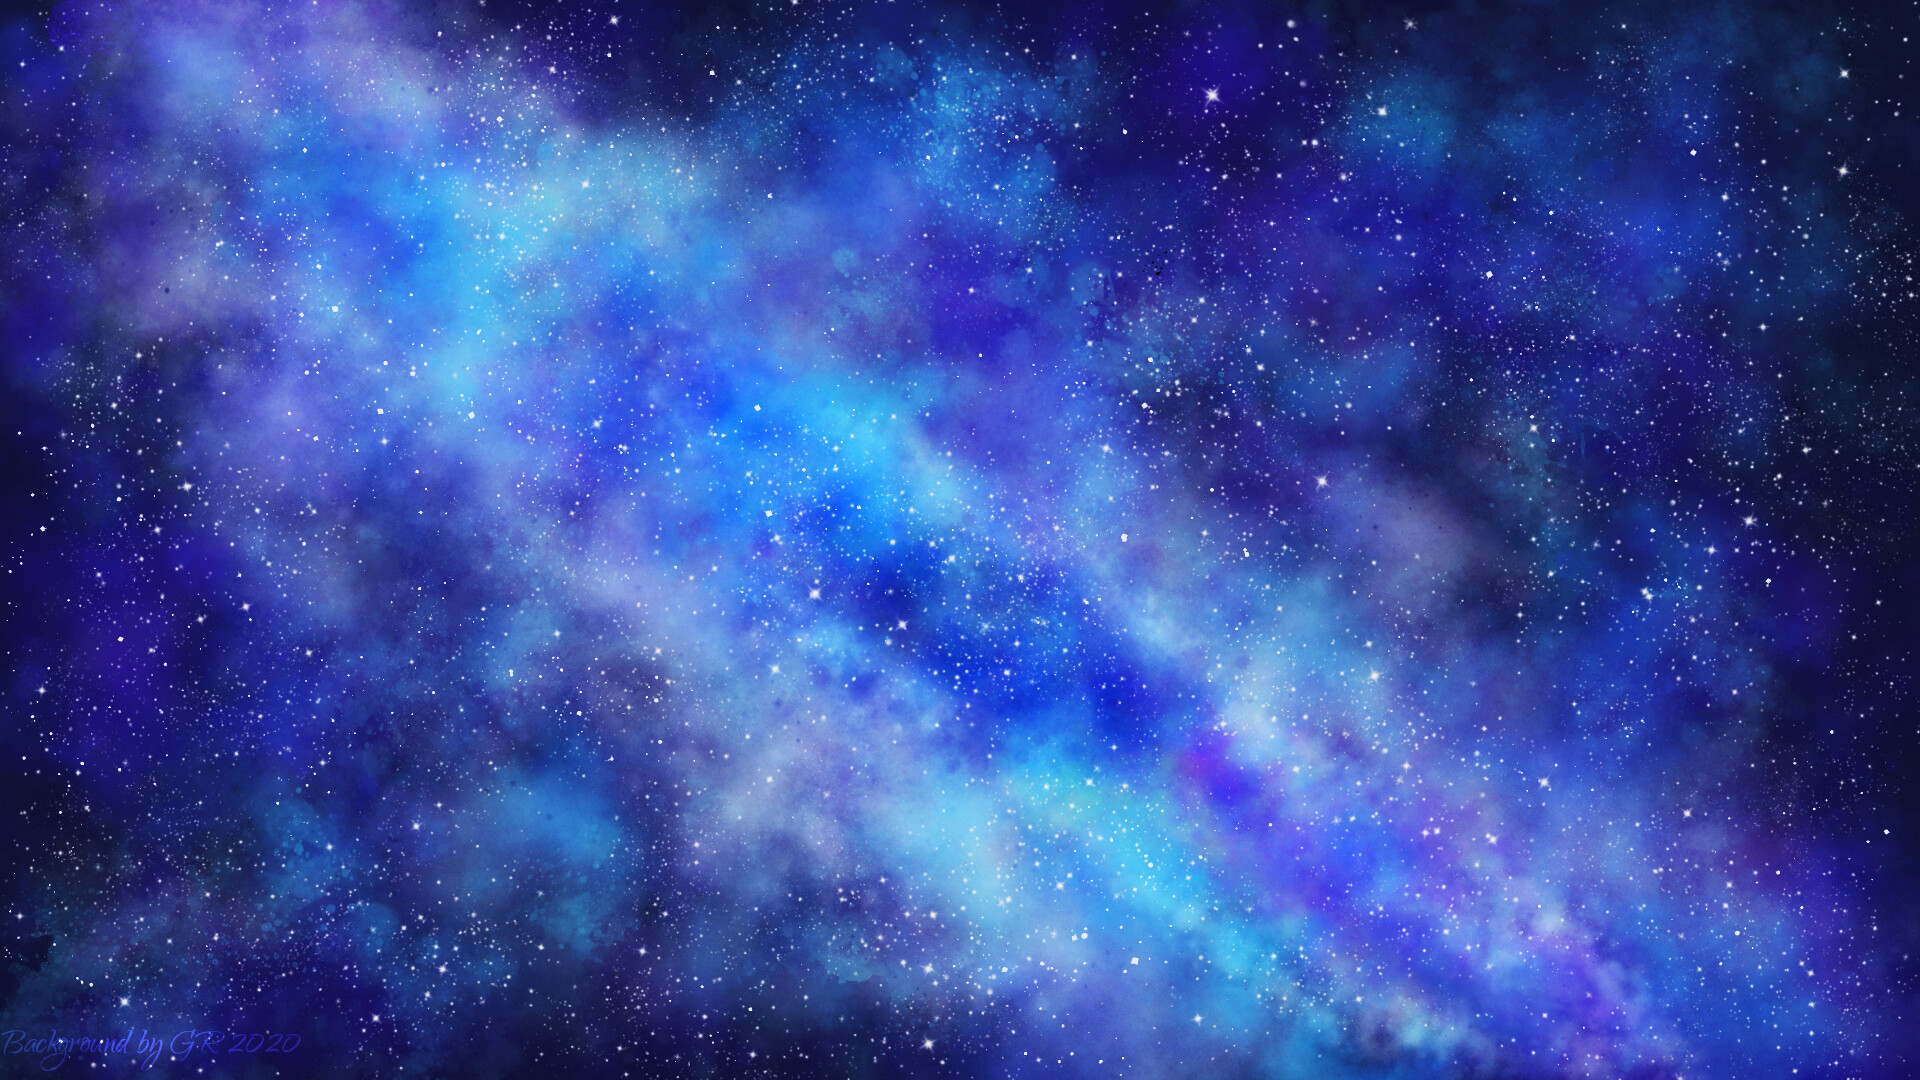 Với hình nền Blue Galaxy HD, bạn sẽ được tận hưởng sự đẹp mê hồn của vũ trụ. Màu xanh nổi bật, kết hợp với sự lấp lánh của những sao trên bầu trời đêm tạo ra một hiệu ứng rực rỡ và cuốn hút. Hãy cùng khám phá khung cảnh tuyệt đẹp này để đưa vẻ đẹp thiên nhiên vào ngôi nhà của bạn.